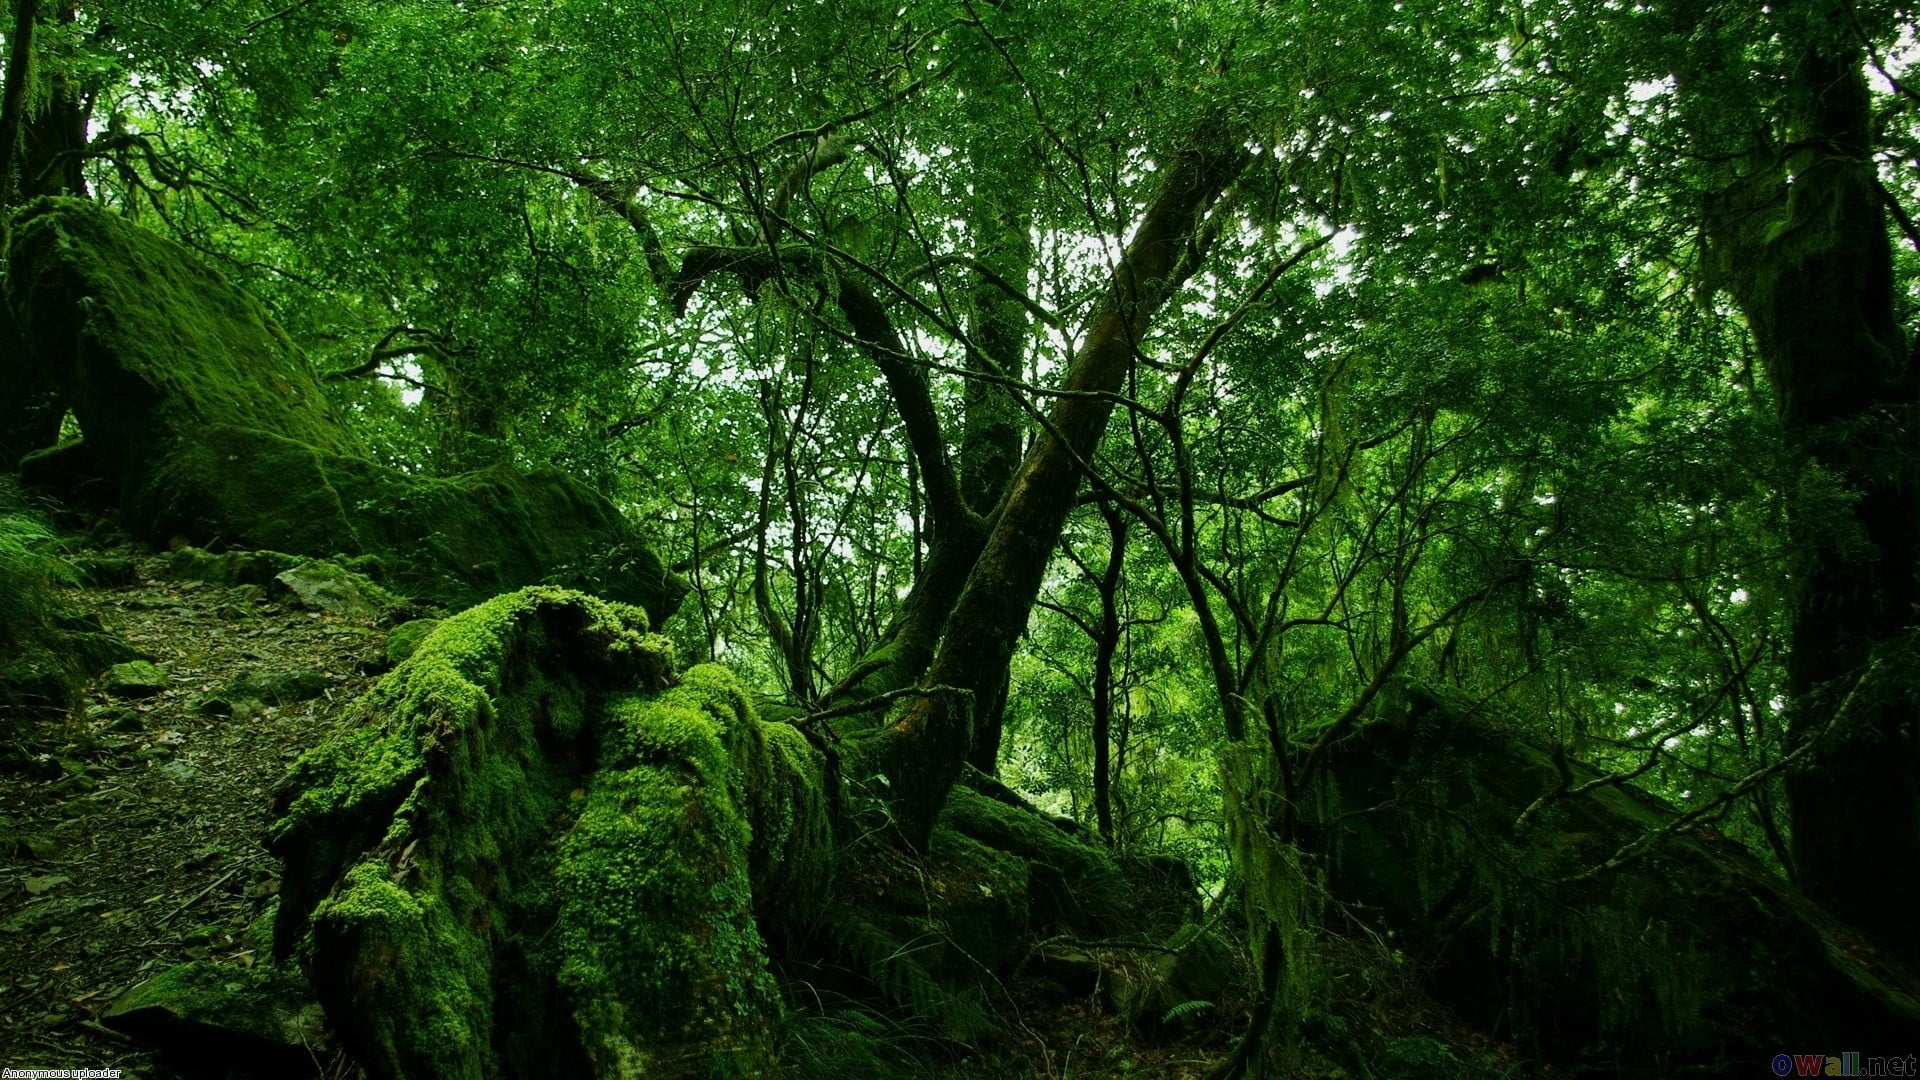 green leaf trees, landscape, forest, nature, plant, green color